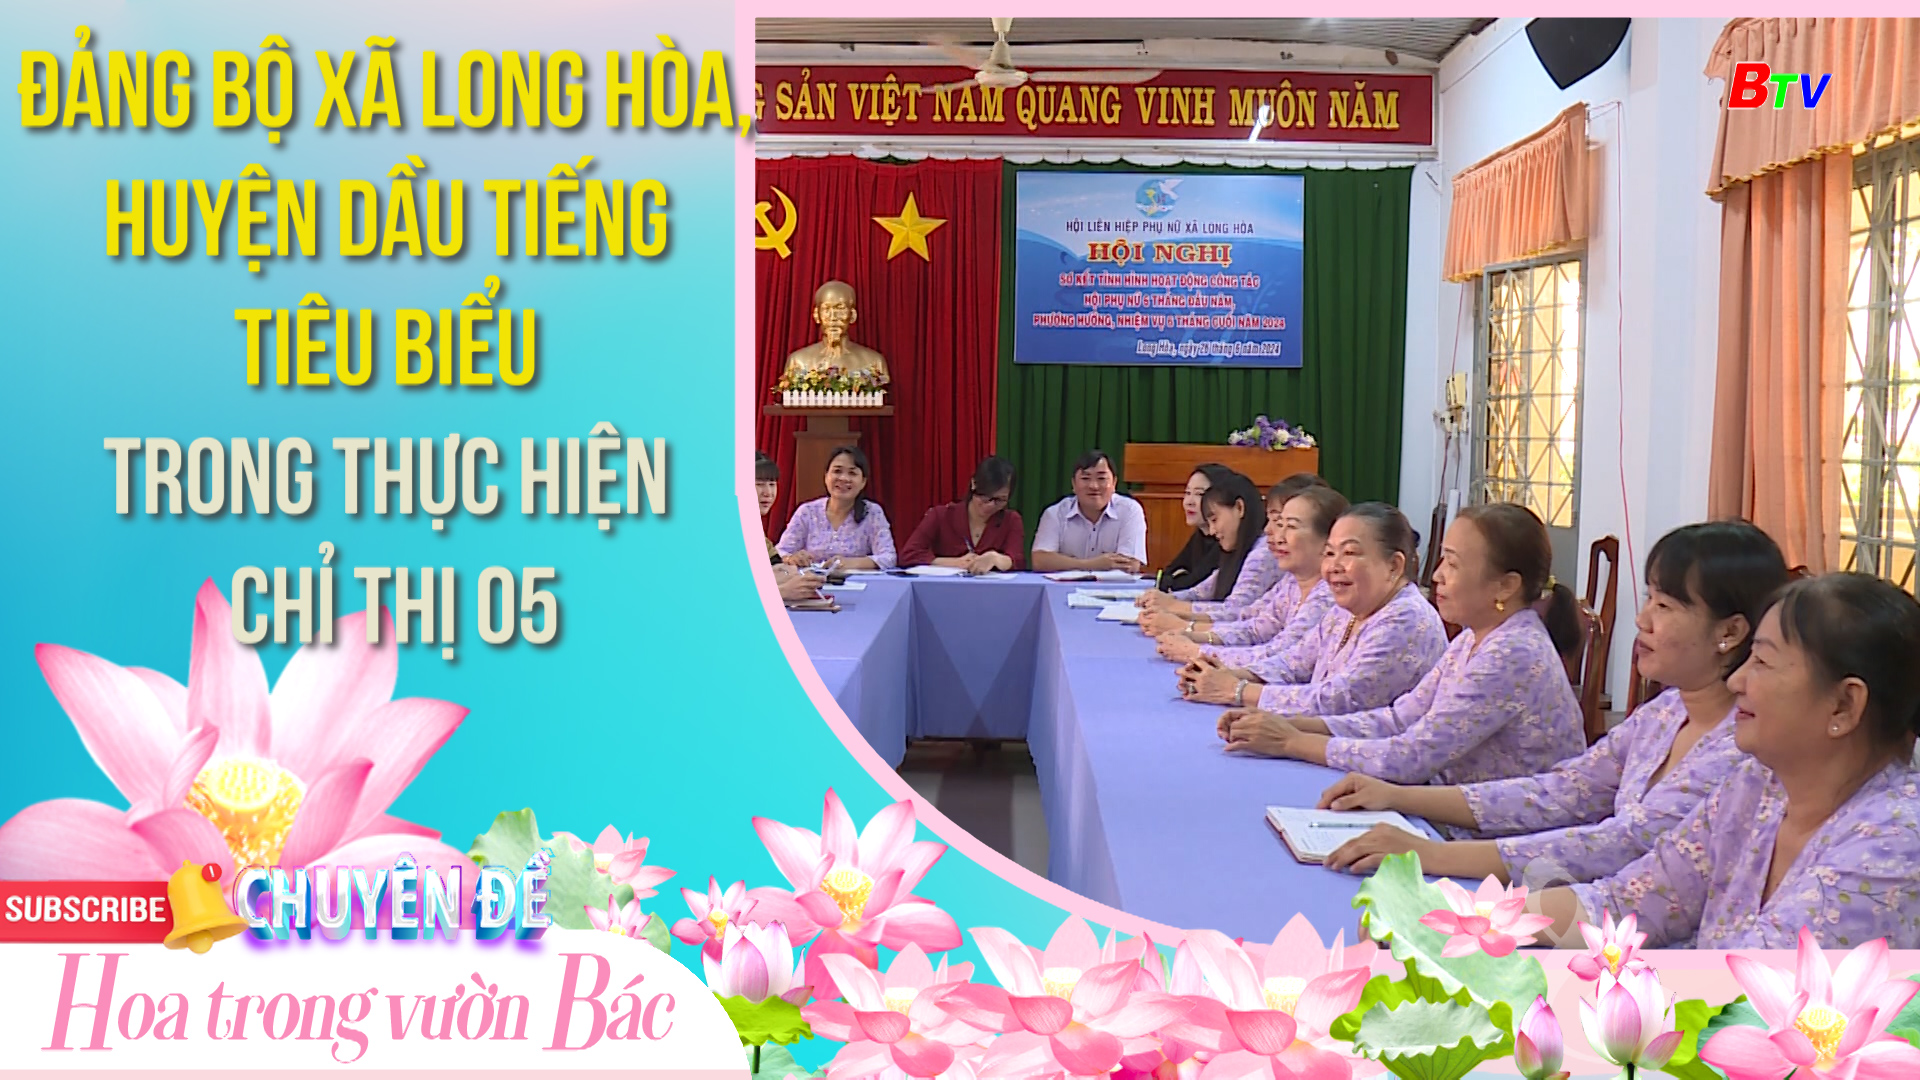 Đảng bộ xã Long Hòa, huyện Dầu Tiếng  tiêu biểu trong thực hiện Chỉ thị 05